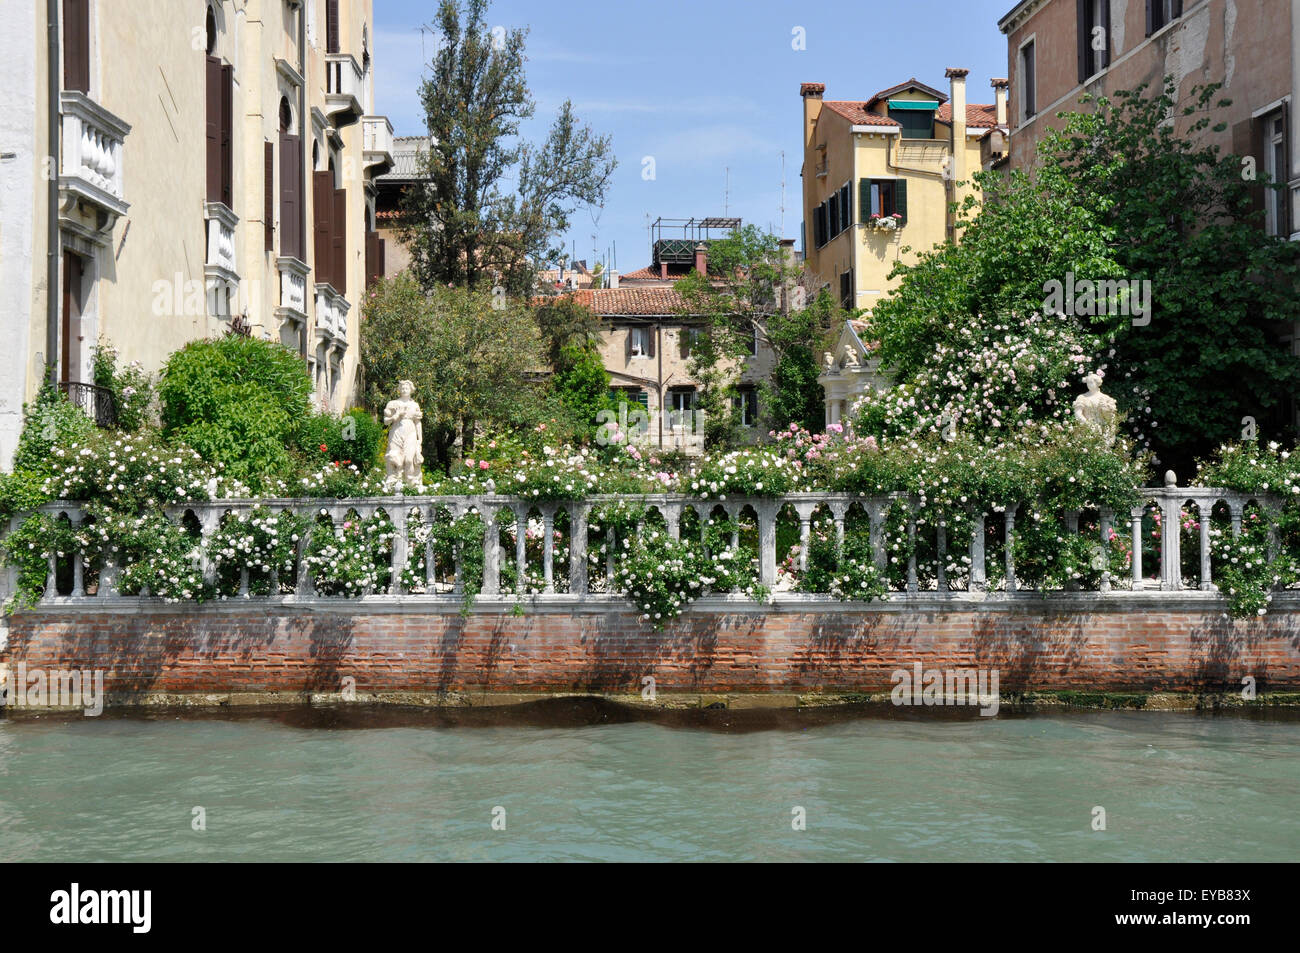 Italia - Venezia - inaspettato sul Canale Grande - sole appartato giardino di rose - statue classiche - ornati parapetto di pietra - colore Foto Stock